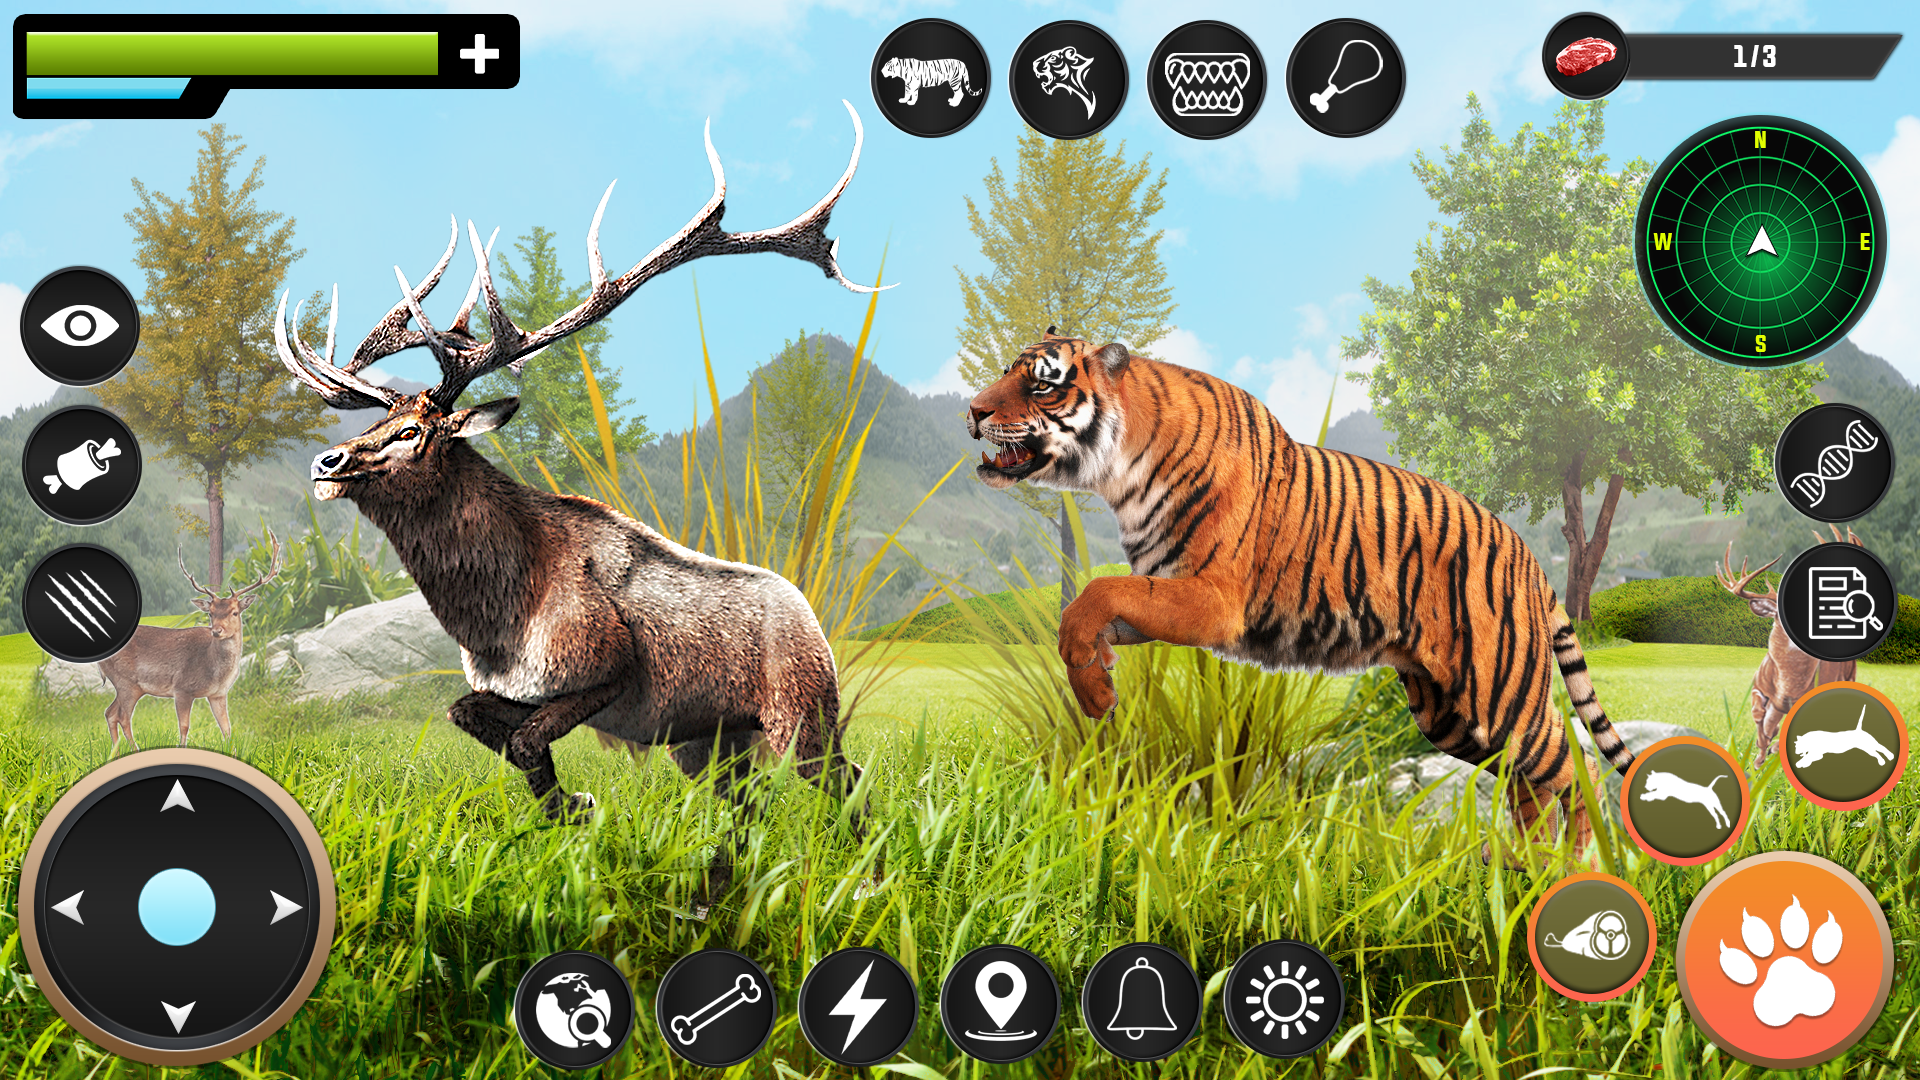 jogos de simulador de tigre 3d versão móvel andróide iOS apk